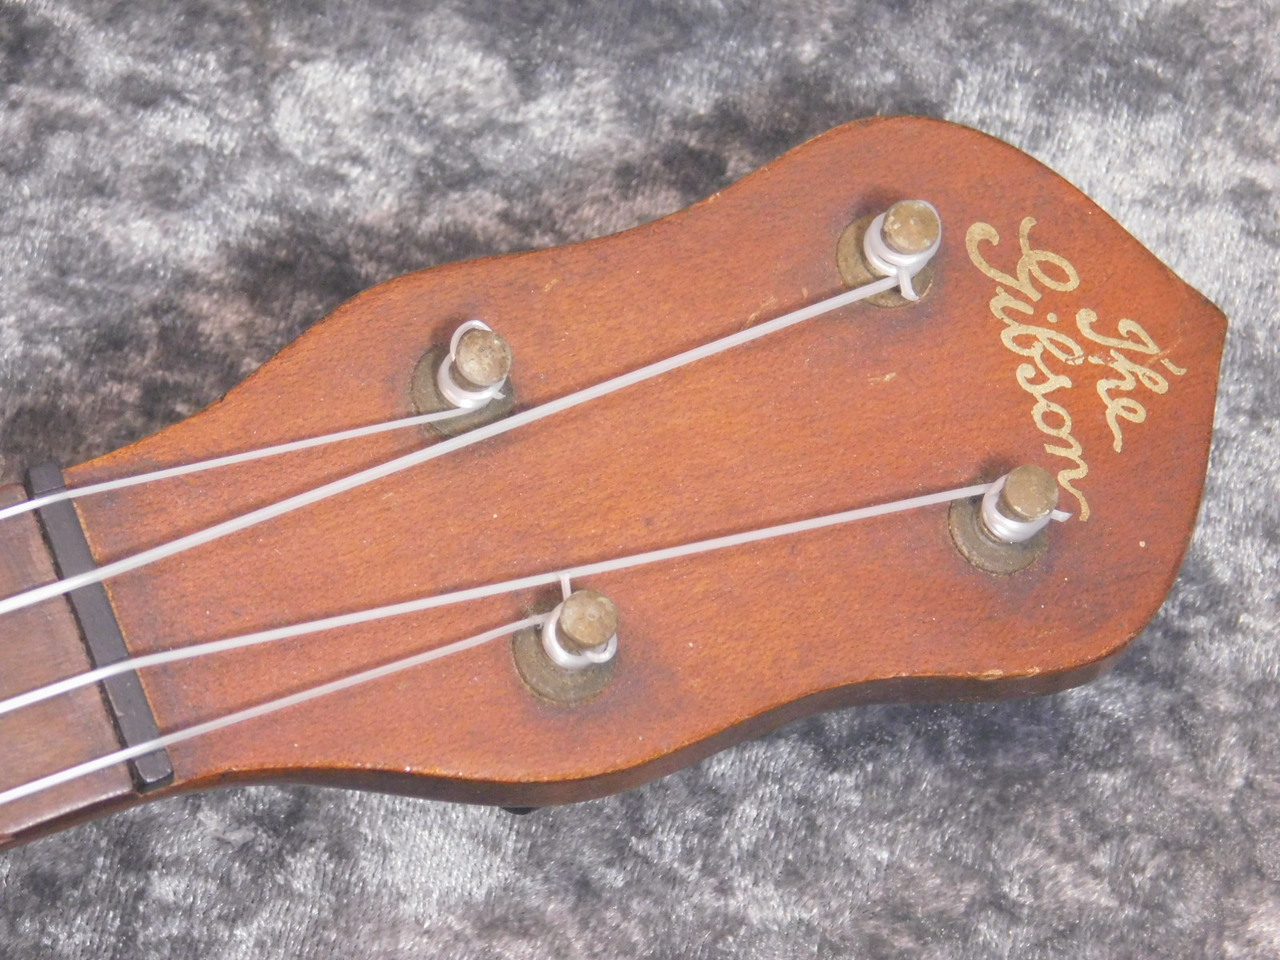 Gibson UB-1 Banjo Ukulele（ビンテージ）【楽器検索デジマート】